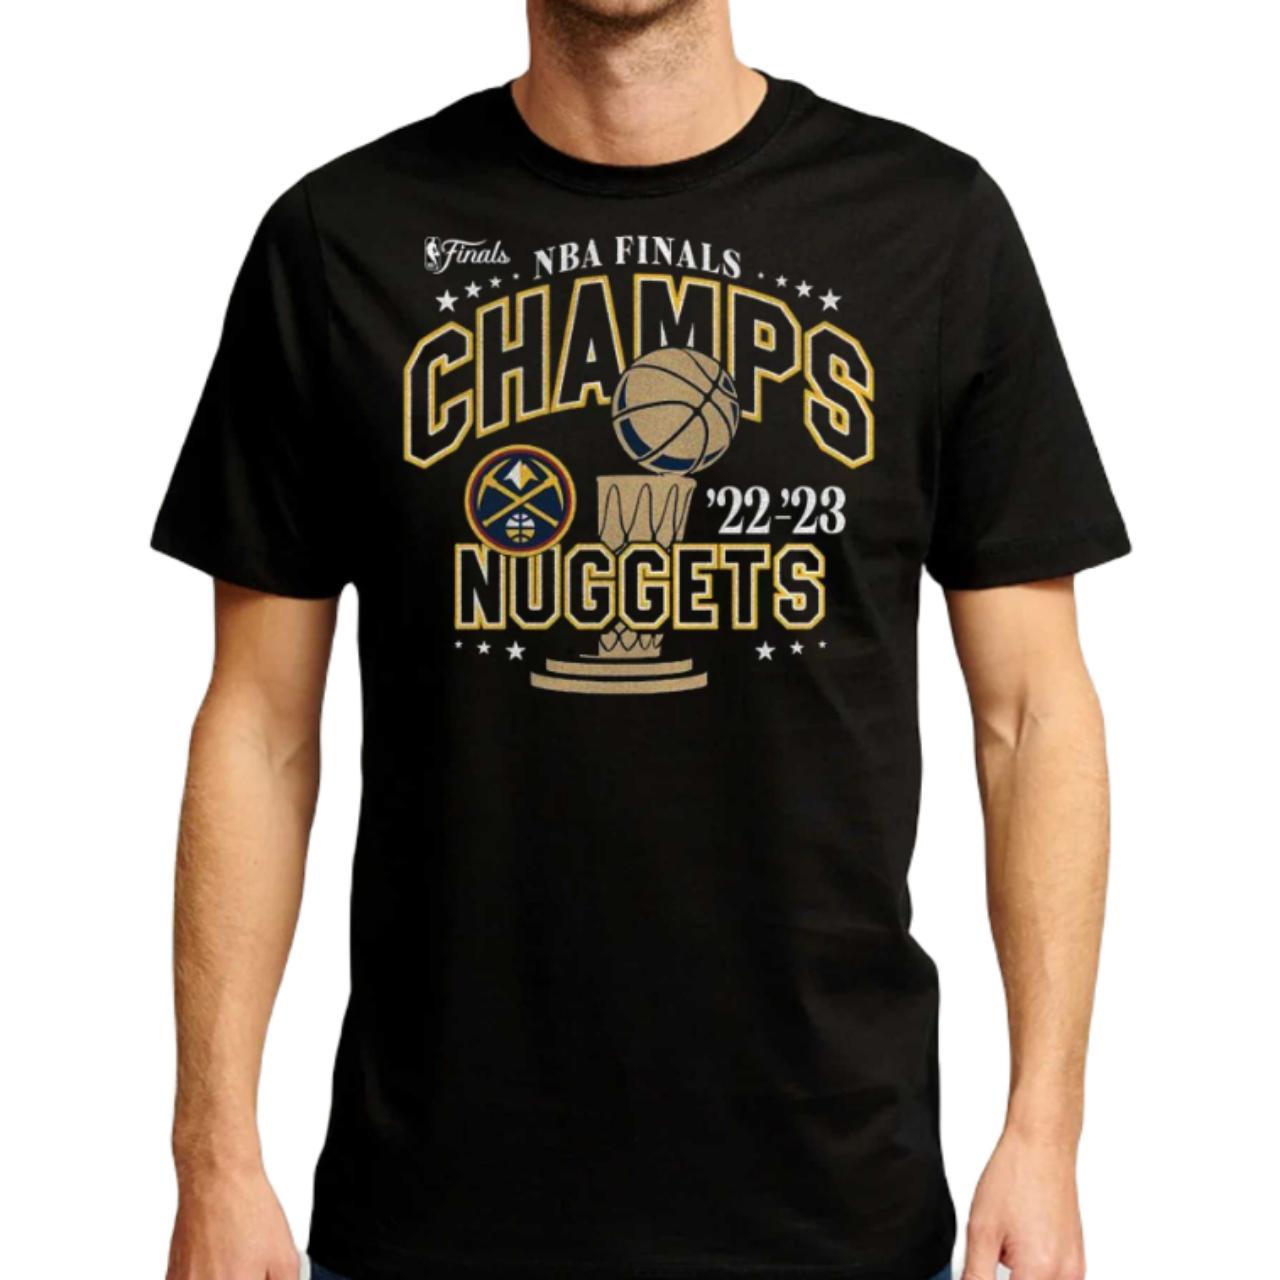 2014 NBA Finals T-Shirt (black)